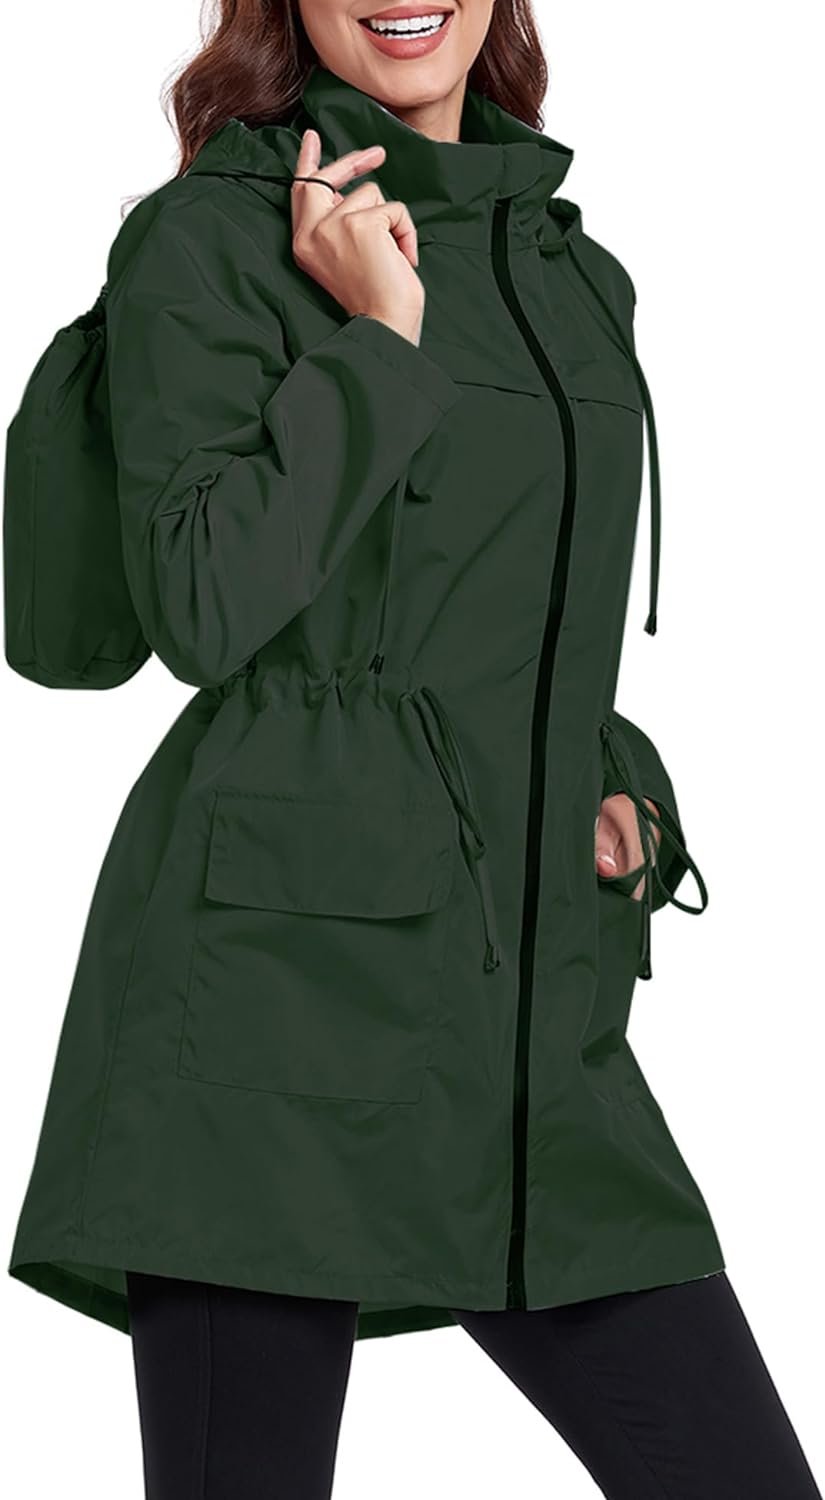 Women Waterproof Raincoat Lightweight Packable Active Outdoor Long Hooded Rain Jacket